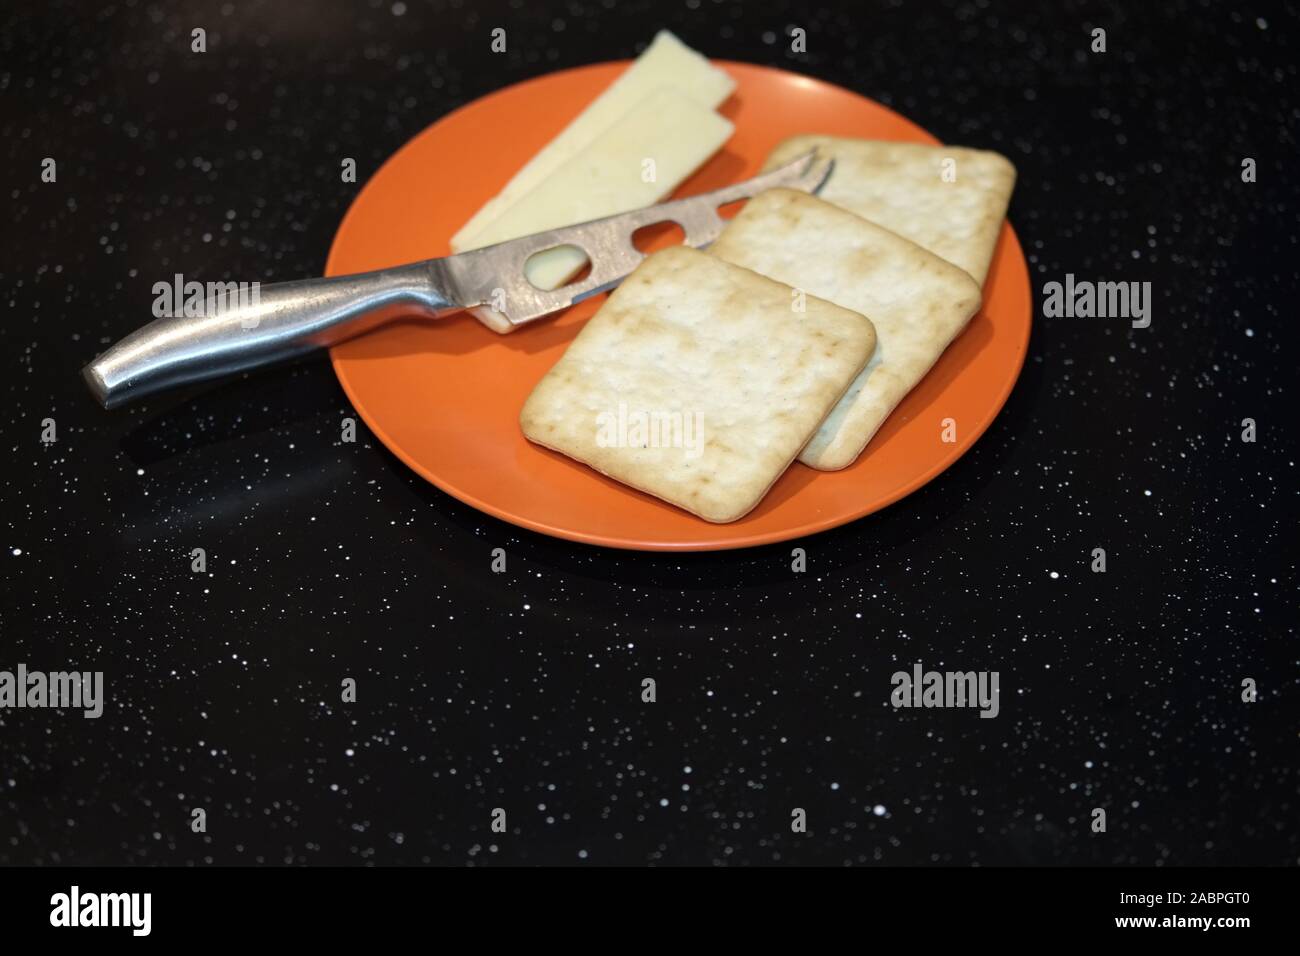 Novembre 2019 - Cream crackers et du fromage cheddar sur une plaque d'orage pour le souper Banque D'Images